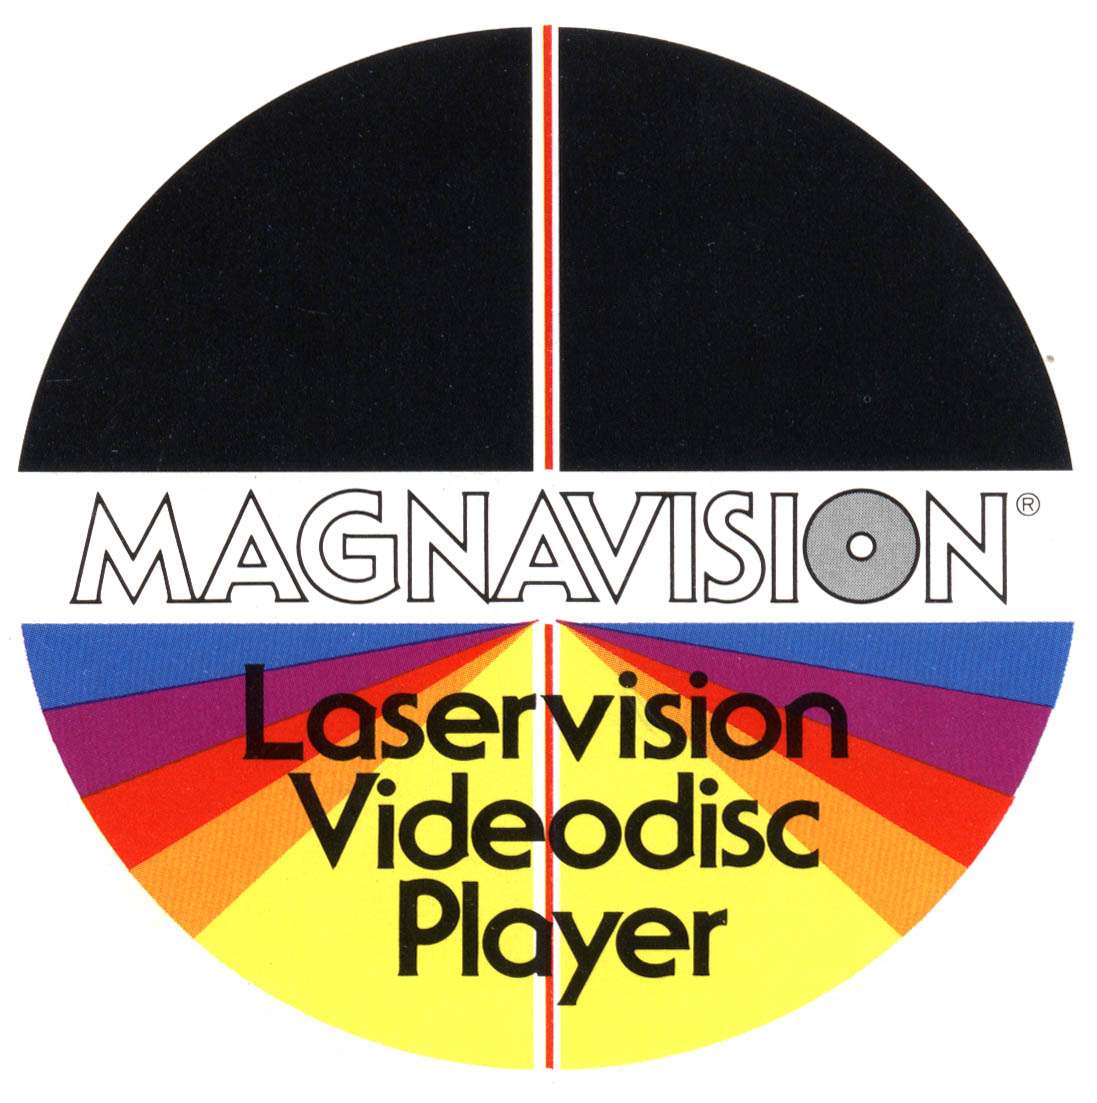 Magnavision Video Long Play